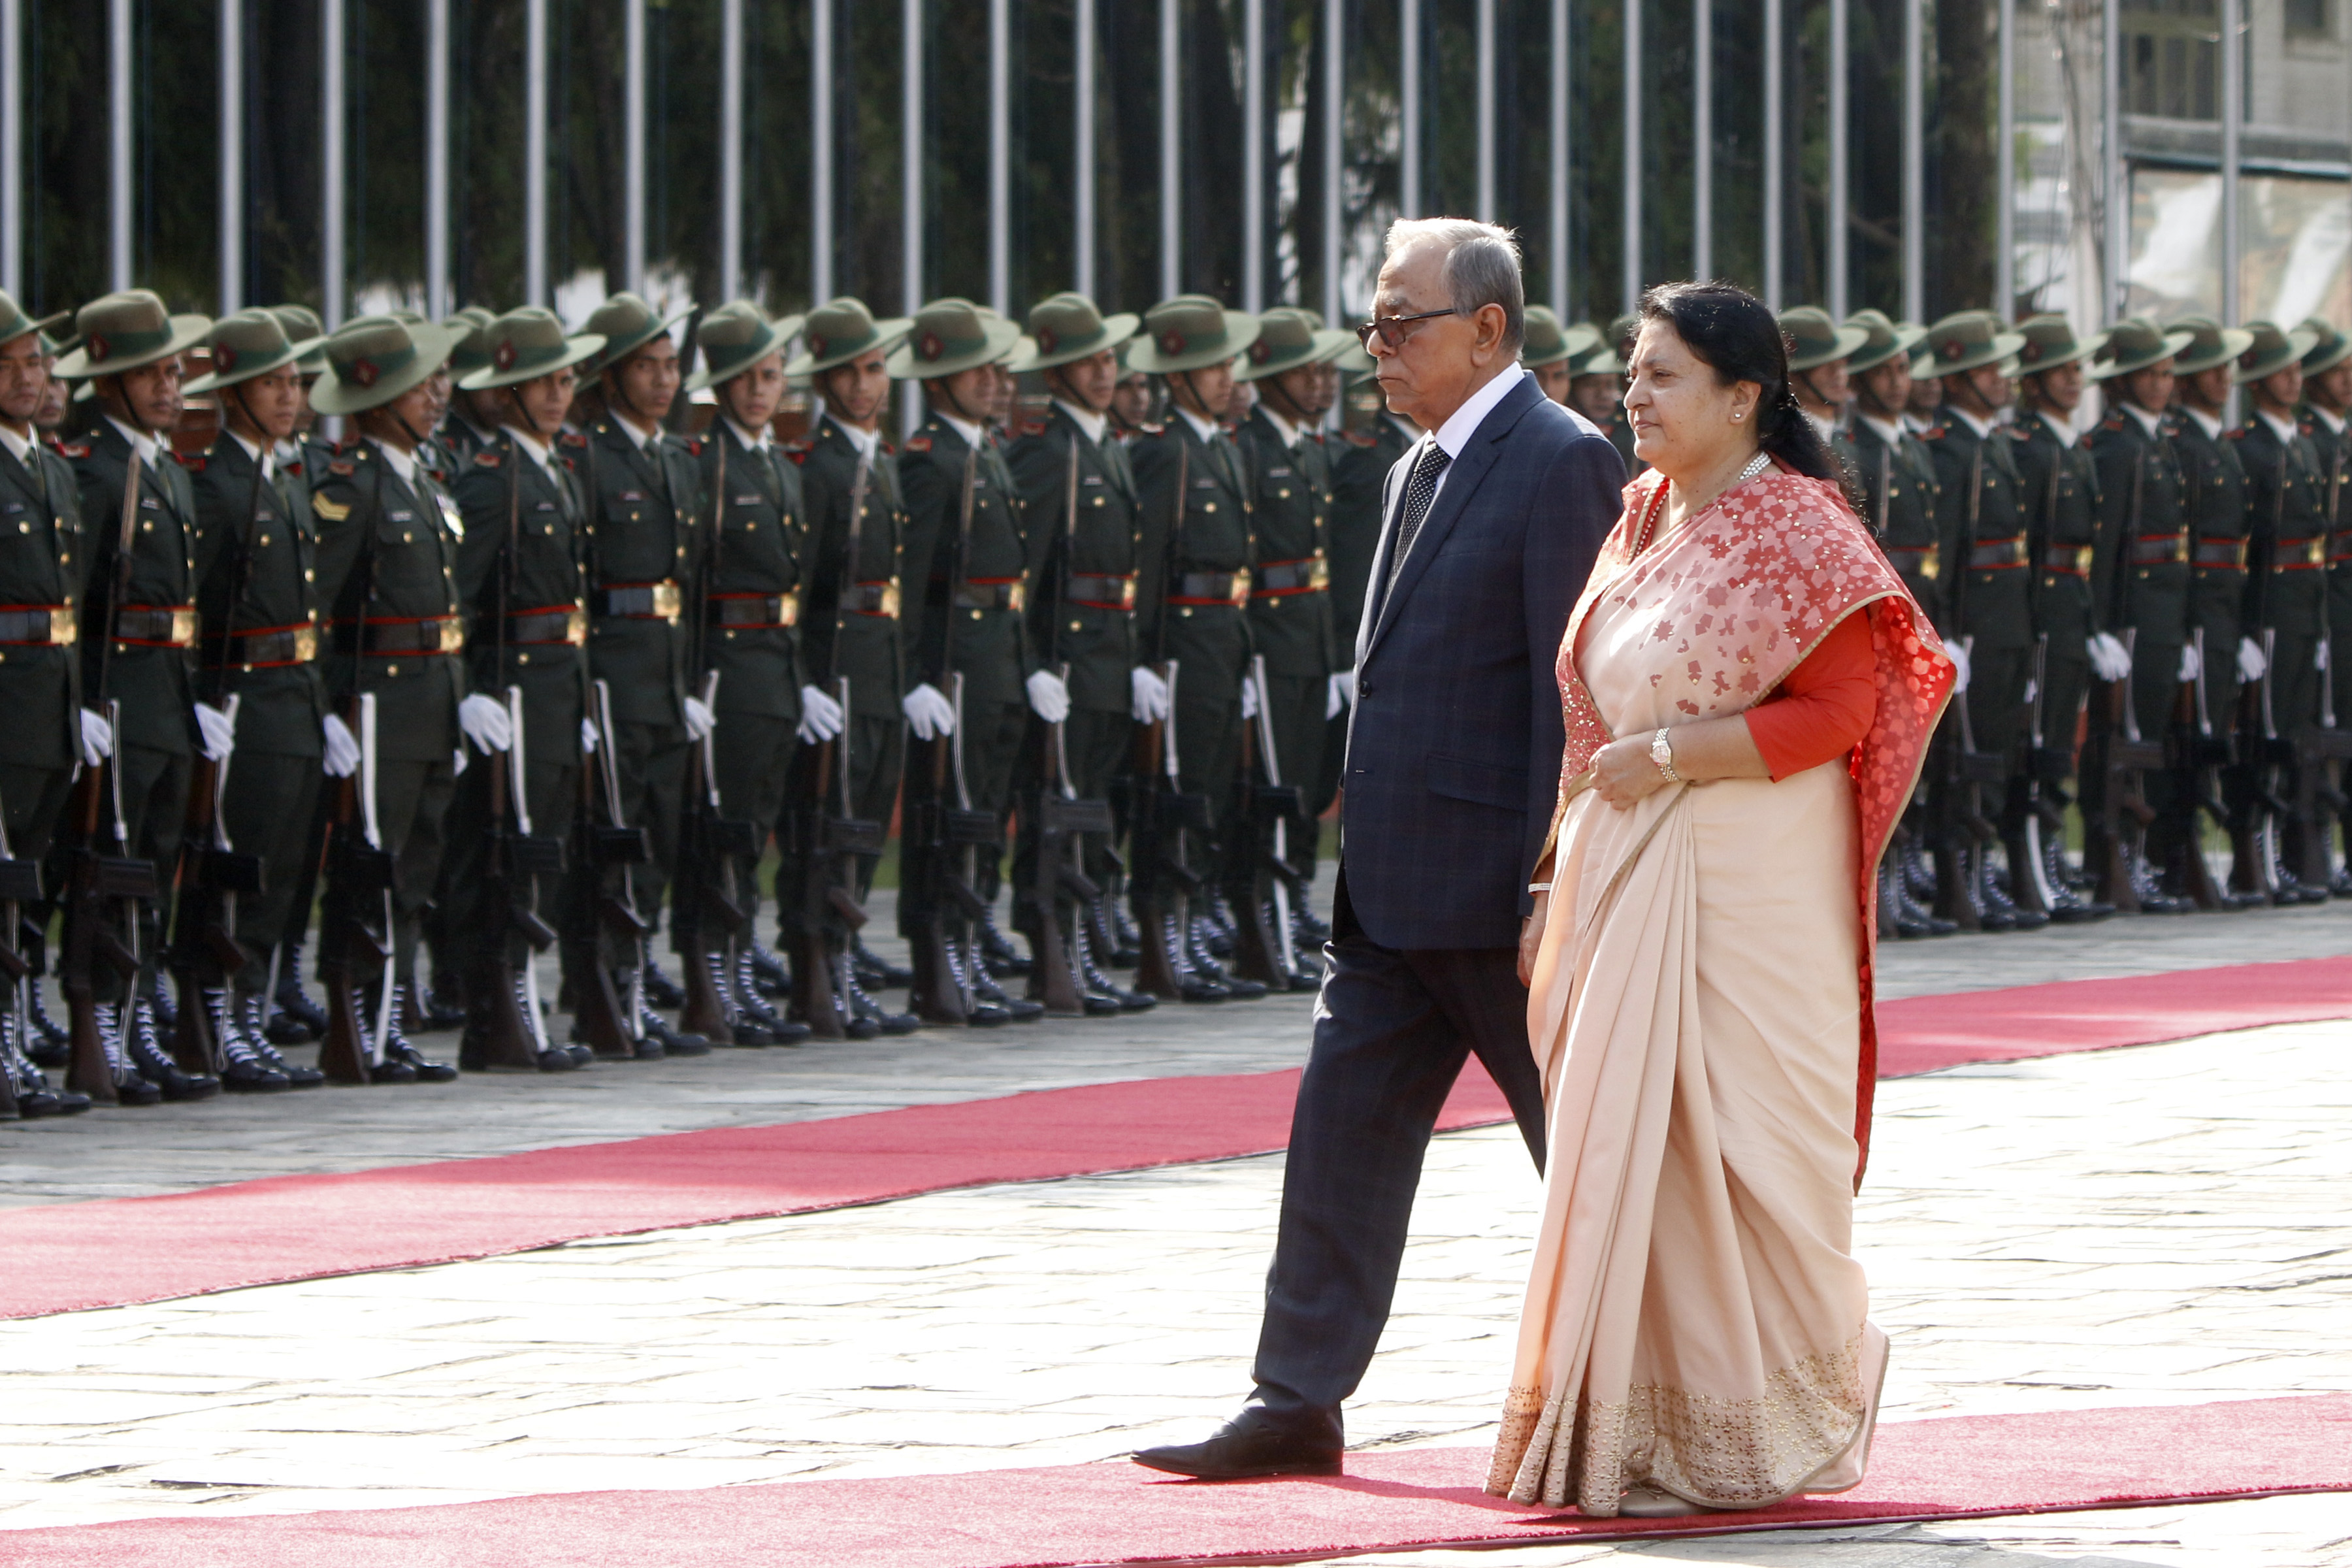 तस्बिरमा हेर्नुहोस बङ्गलादेशका राष्ट्रपतिको स्वागत,विमानस्थलमा अवतरण  देखि २१ तोपको सलामी सम्म